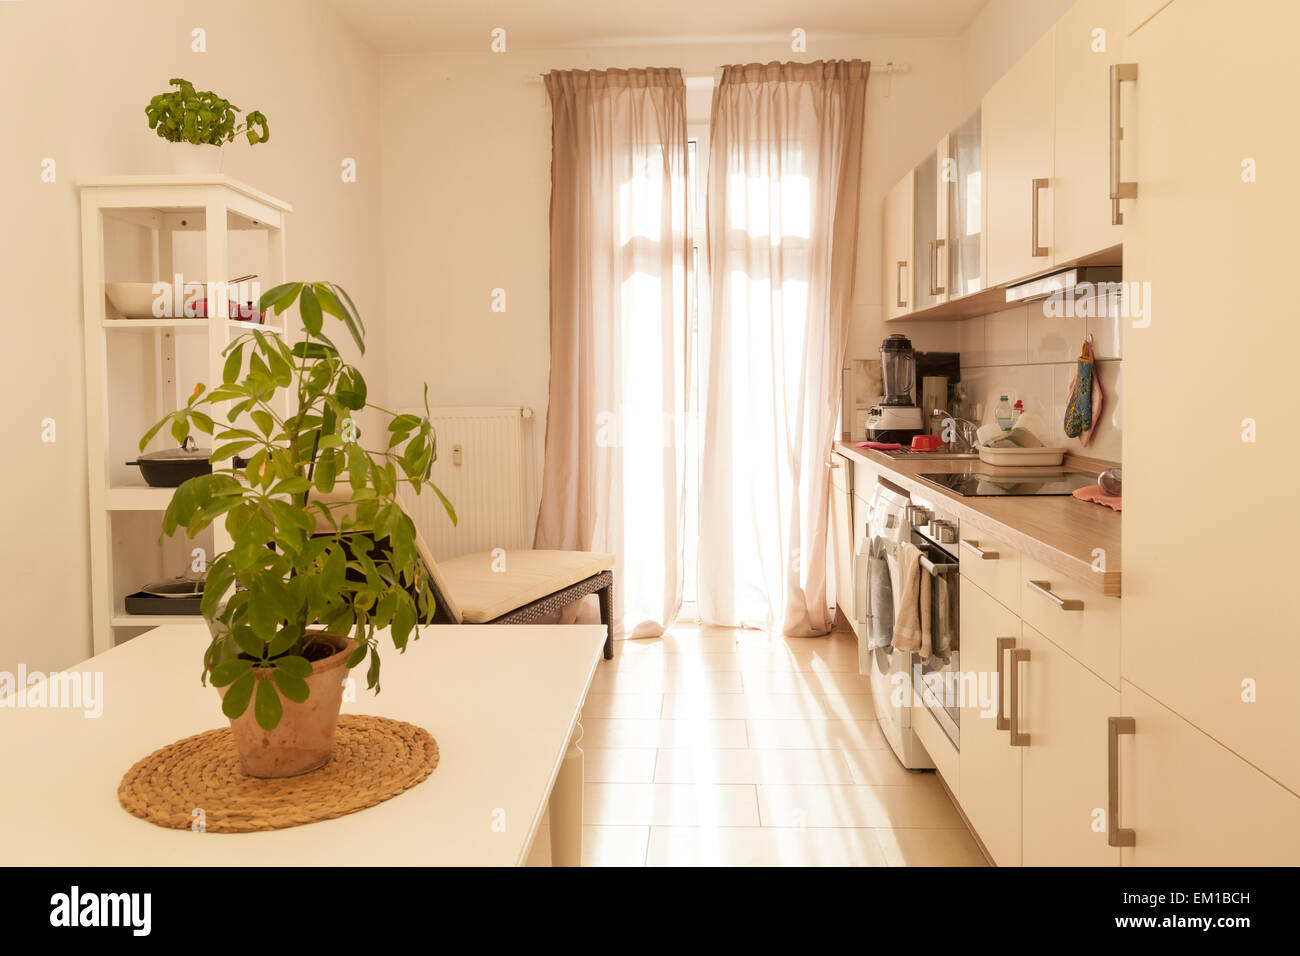 Cocina moderna habitación con cocina equipada Foto de stock